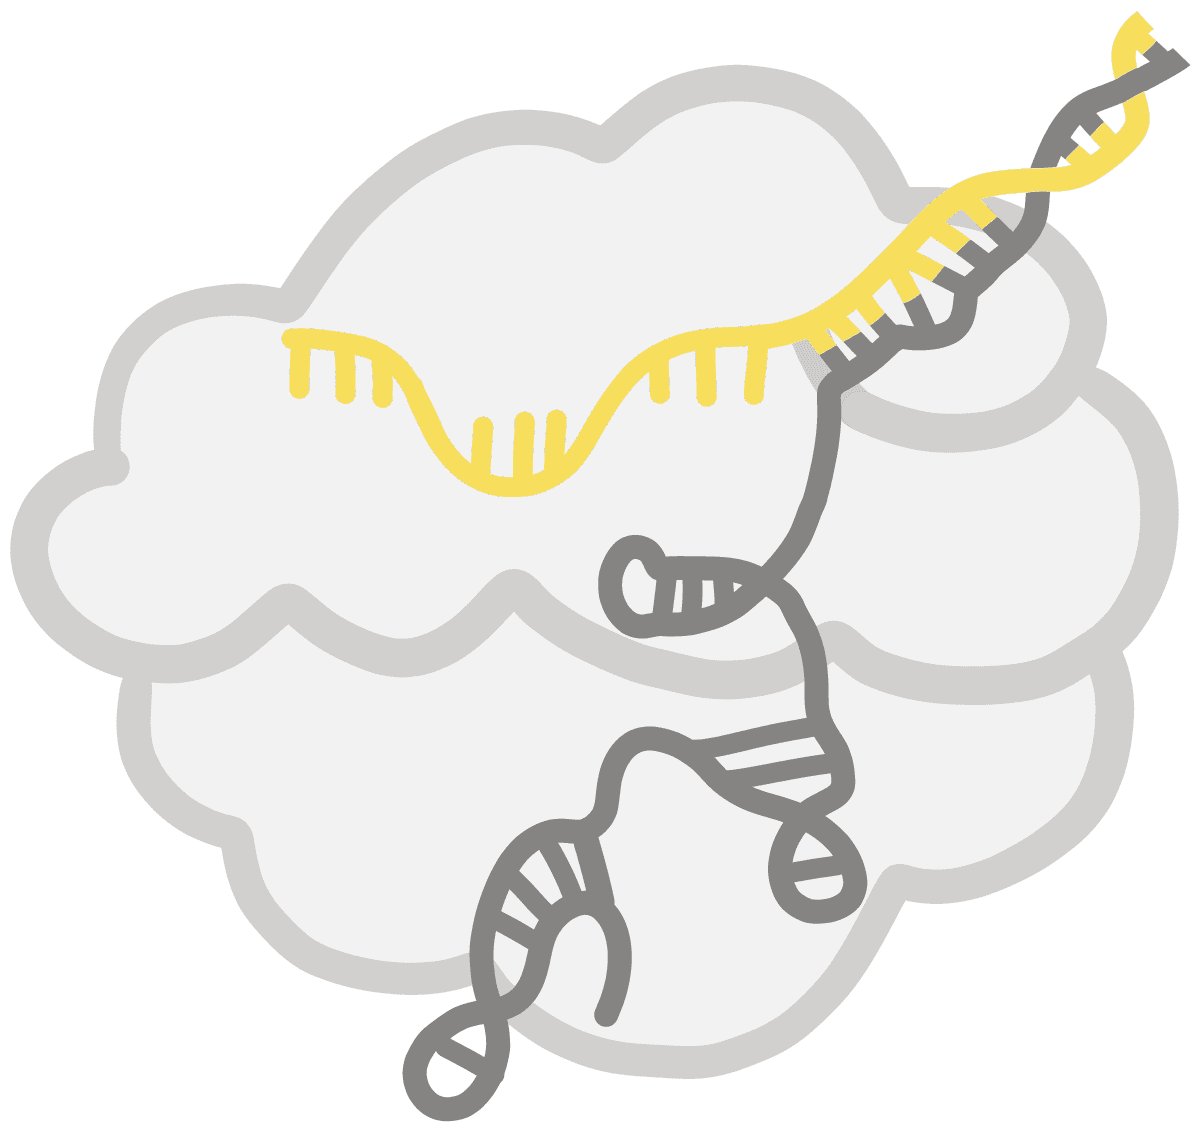 黄色 crRNA 与 Cas 蛋白和引导 RNA 形成复合物的图像